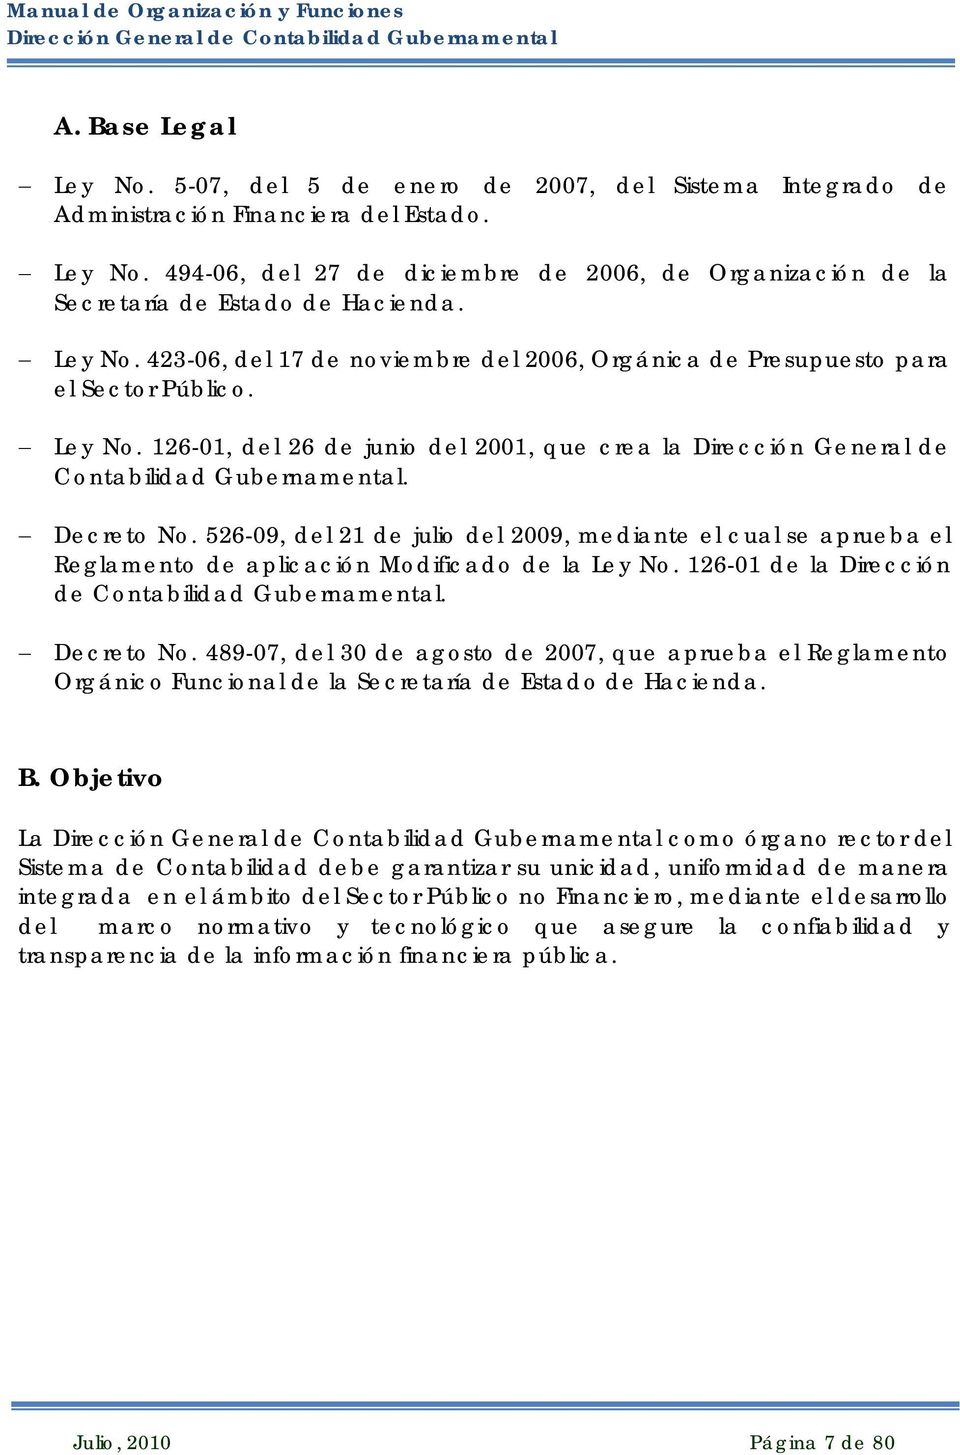 Decreto No. 526-09, del 21 de julio del 2009, mediante el cual se aprueba el Reglamento de aplicación Modificado de la Ley No. 126-01 de la Dirección de Contabilidad Gubernamental. Decreto No.